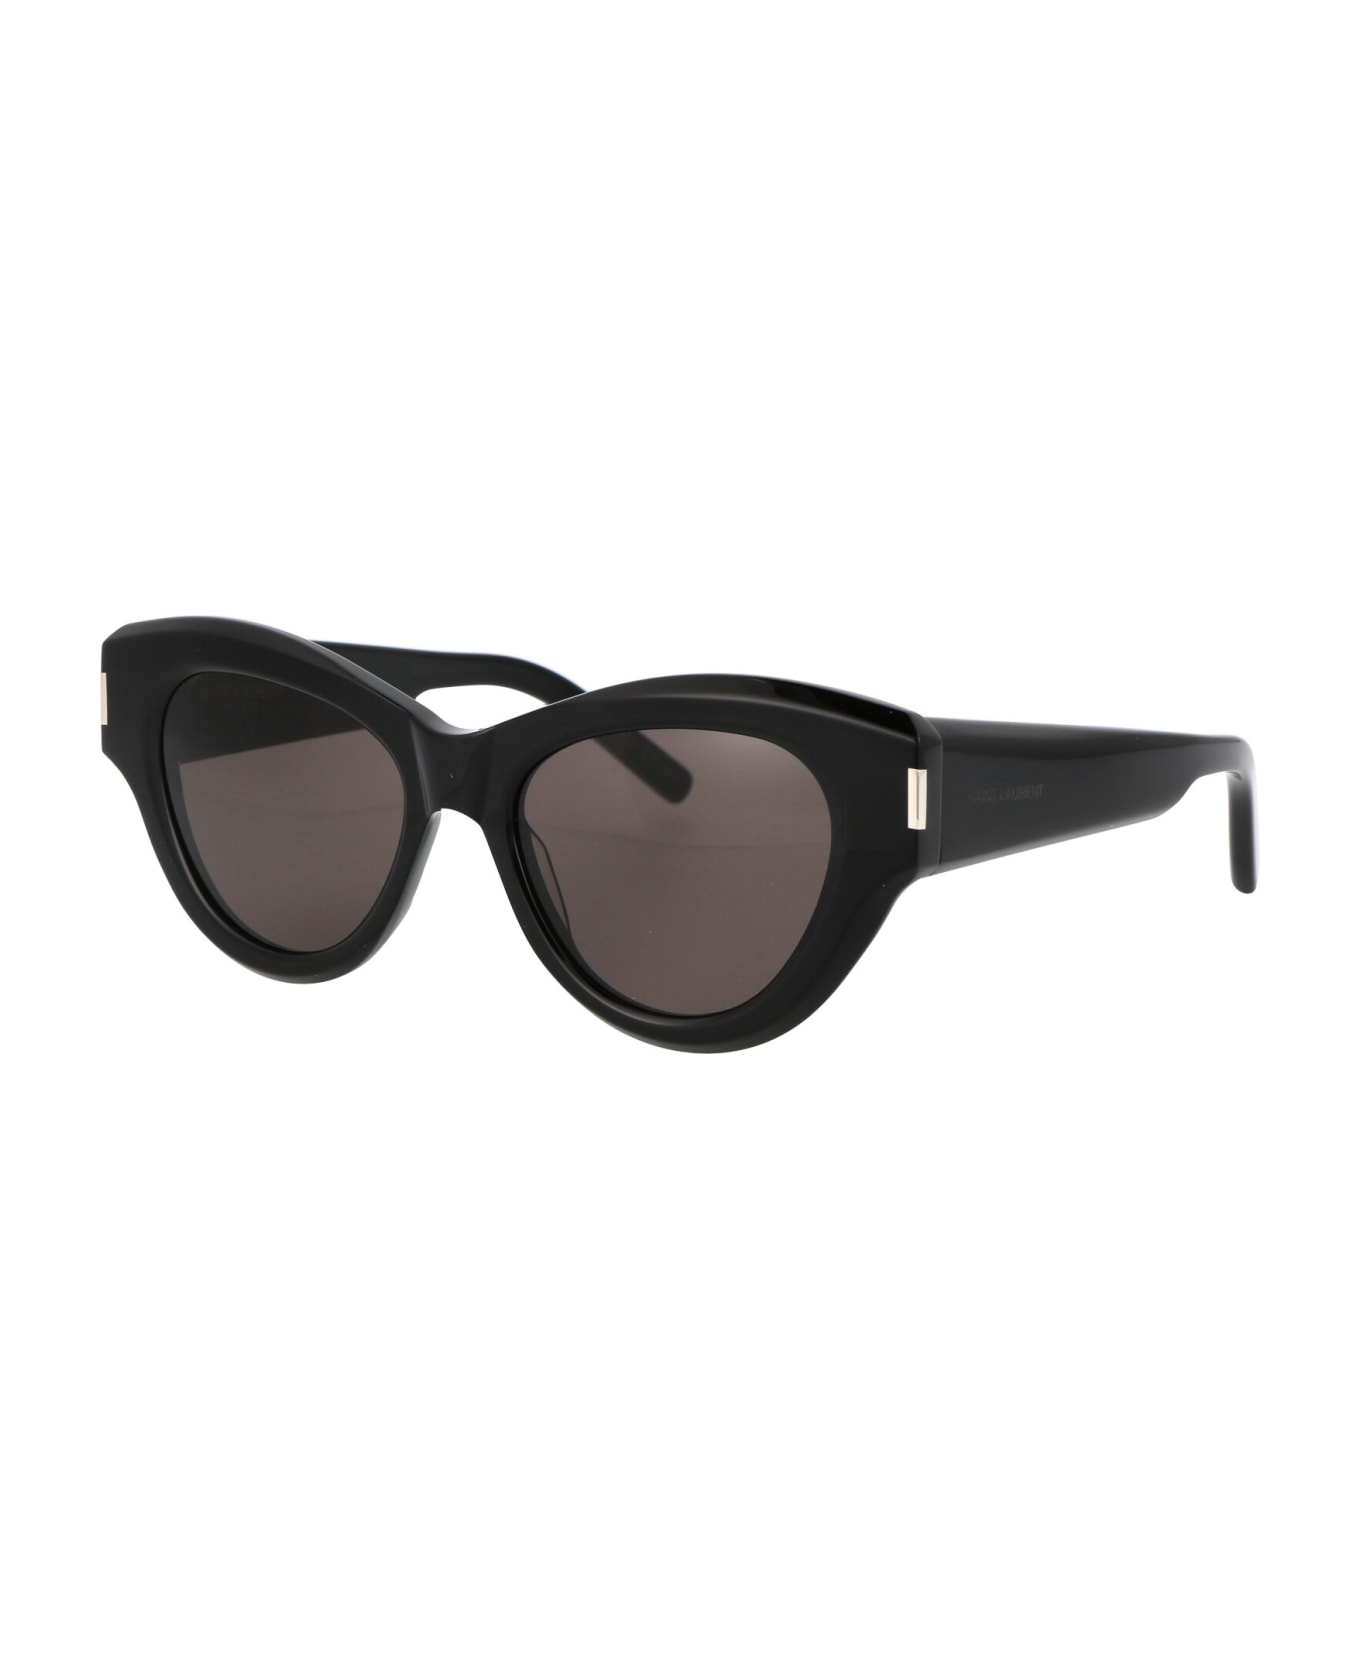 Saint Laurent Eyewear Sl 506 Sunglasses - 001 BLACK BLACK BLACK